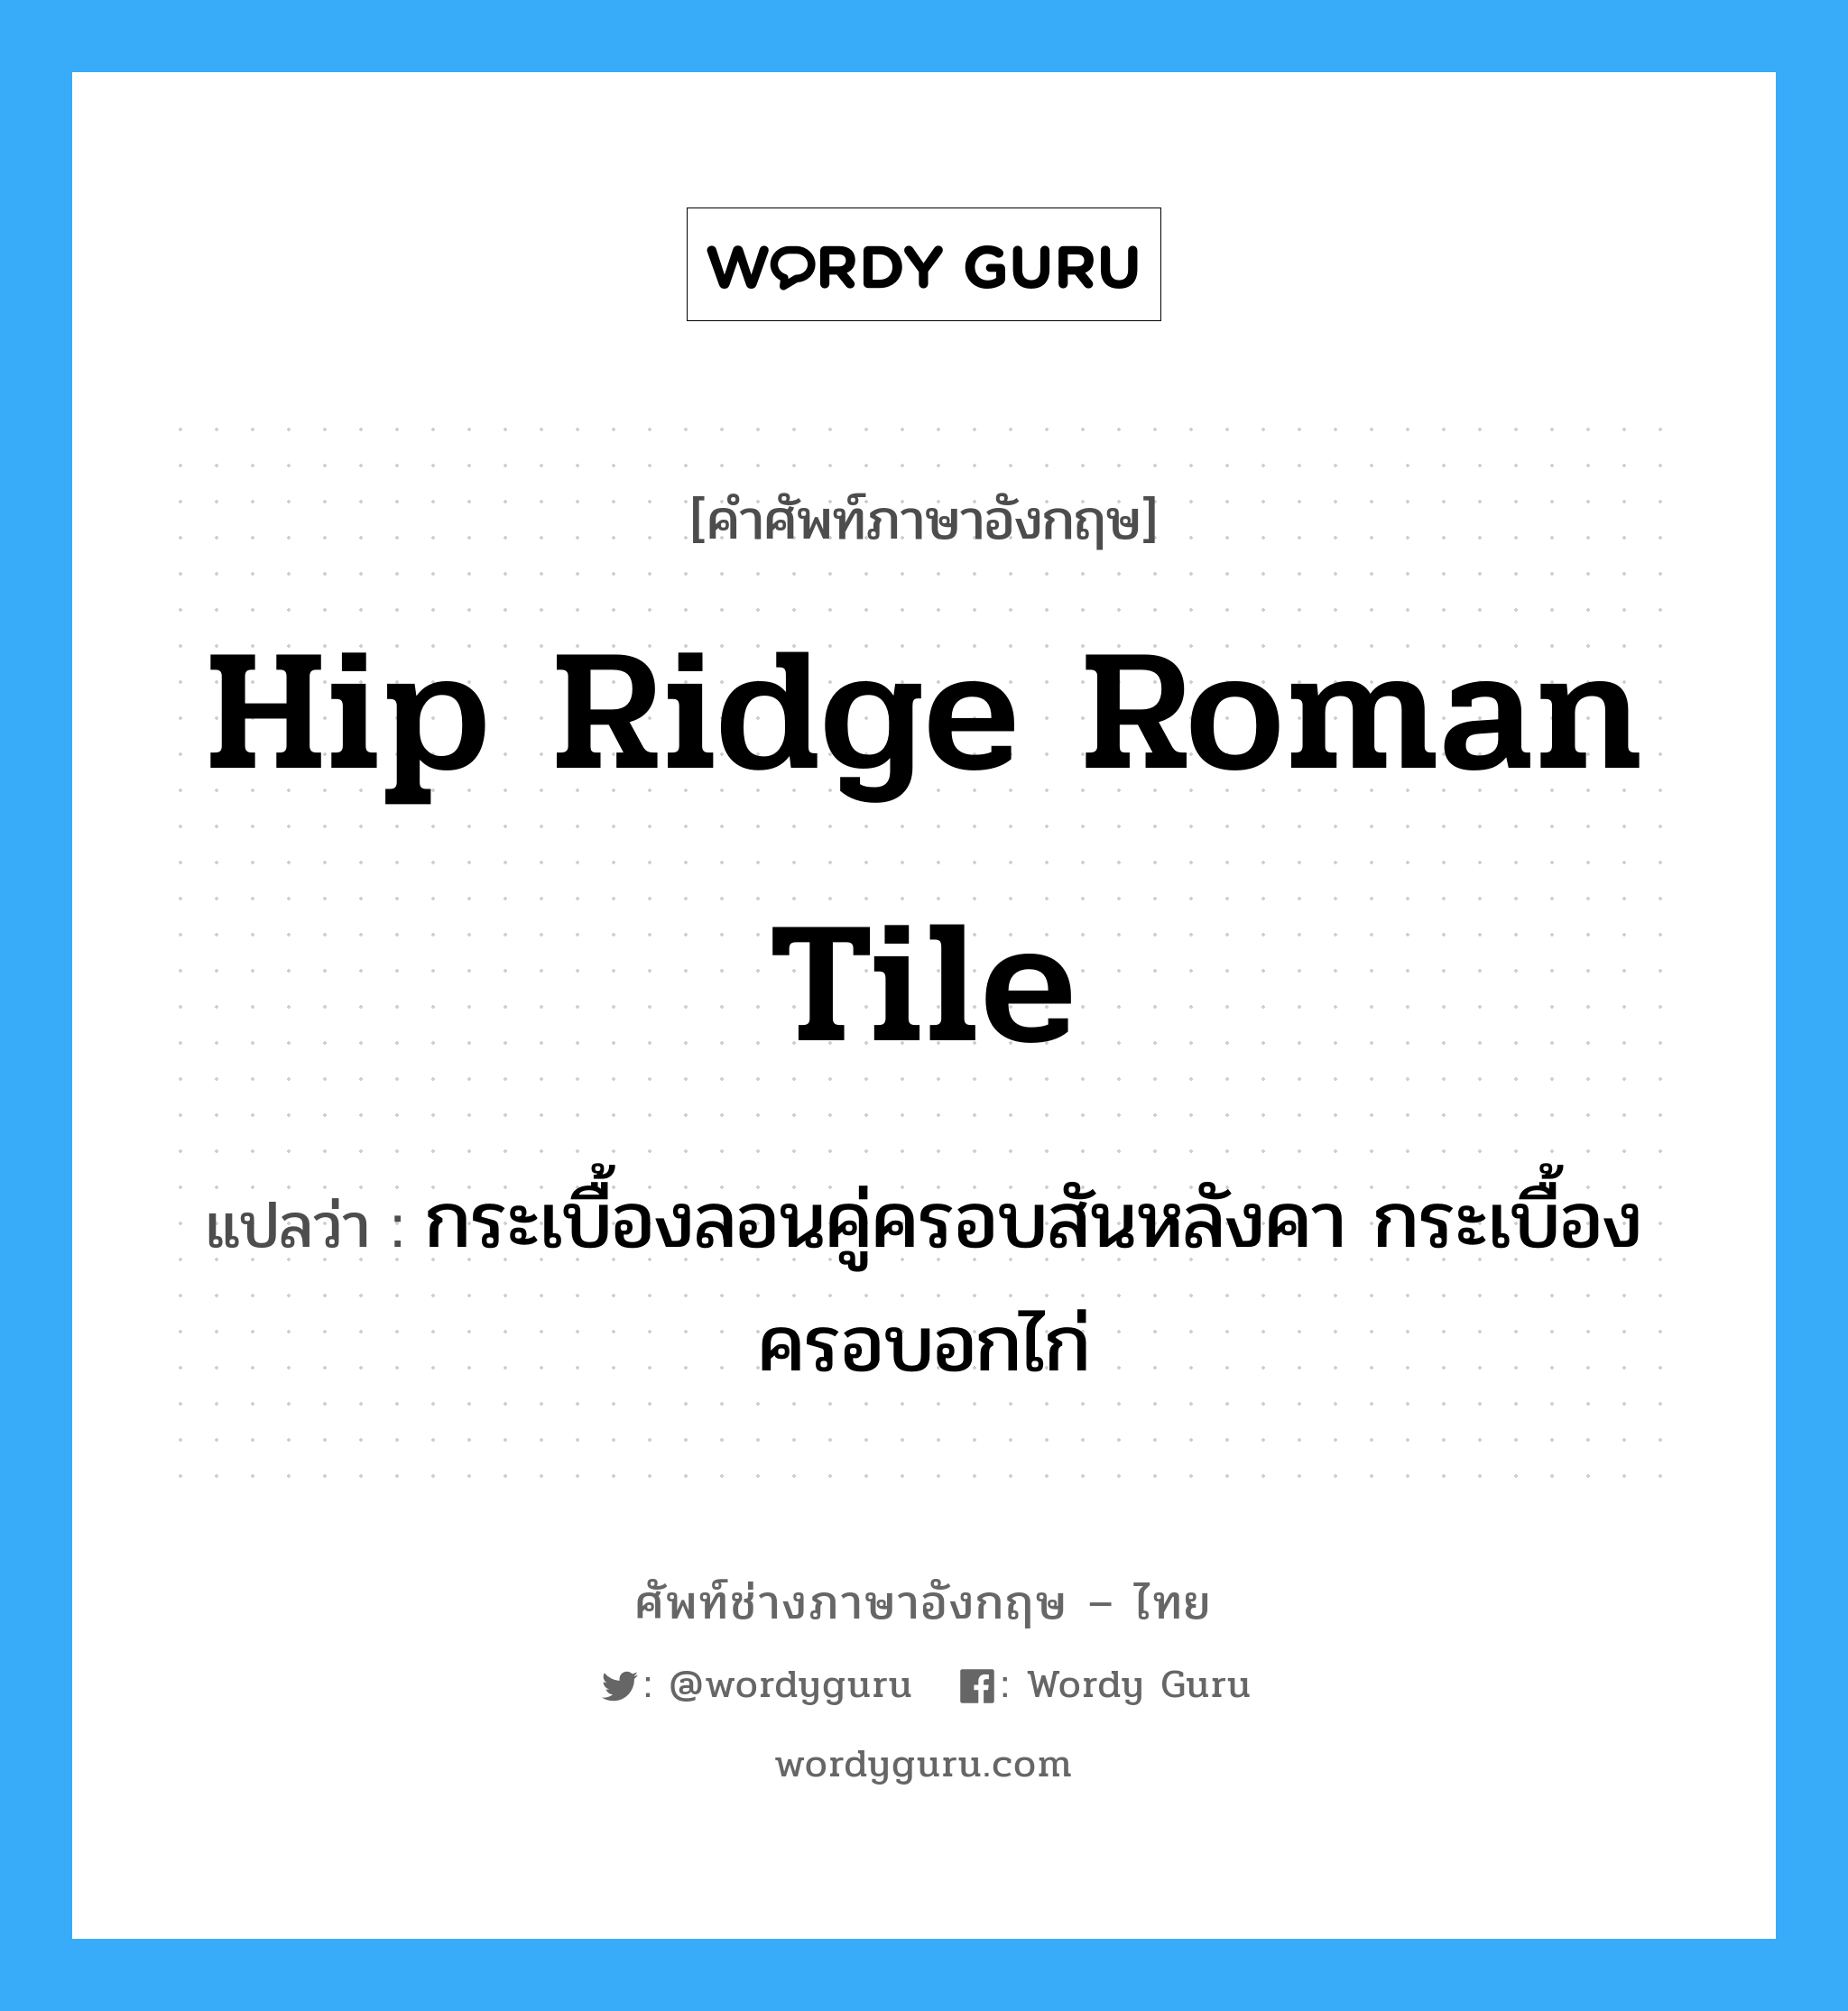 hip ridge Roman tile แปลว่า?, คำศัพท์ช่างภาษาอังกฤษ - ไทย hip ridge Roman tile คำศัพท์ภาษาอังกฤษ hip ridge Roman tile แปลว่า กระเบื้องลอนคู่ครอบสันหลังคา กระเบื้องครอบอกไก่